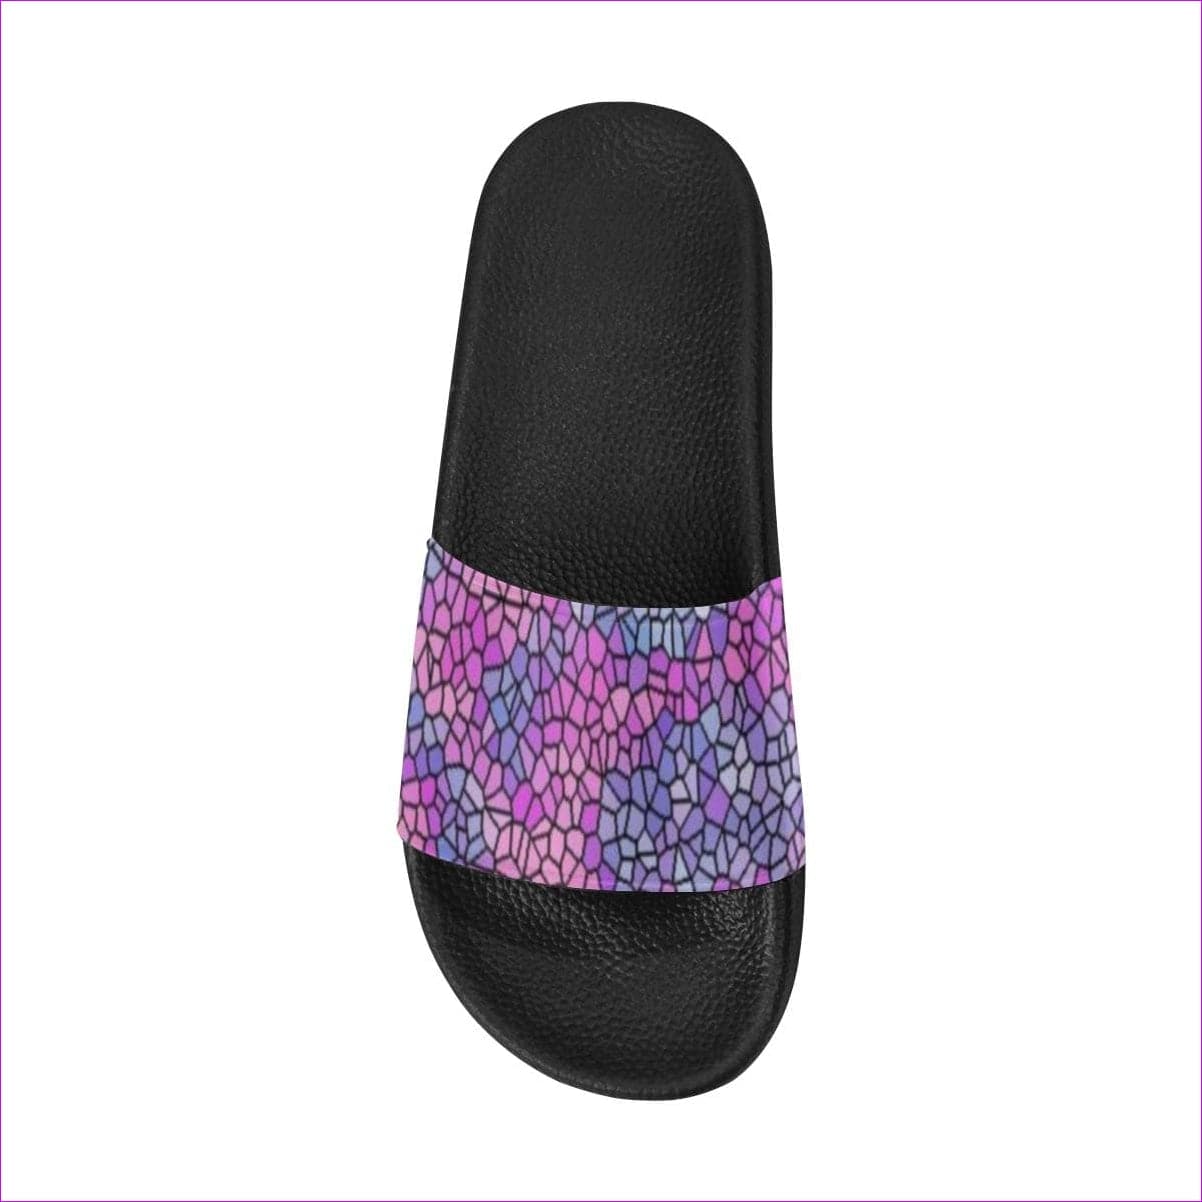 - Royal Pallette Women's Slide Sandals - womens shoe at TFC&H Co.